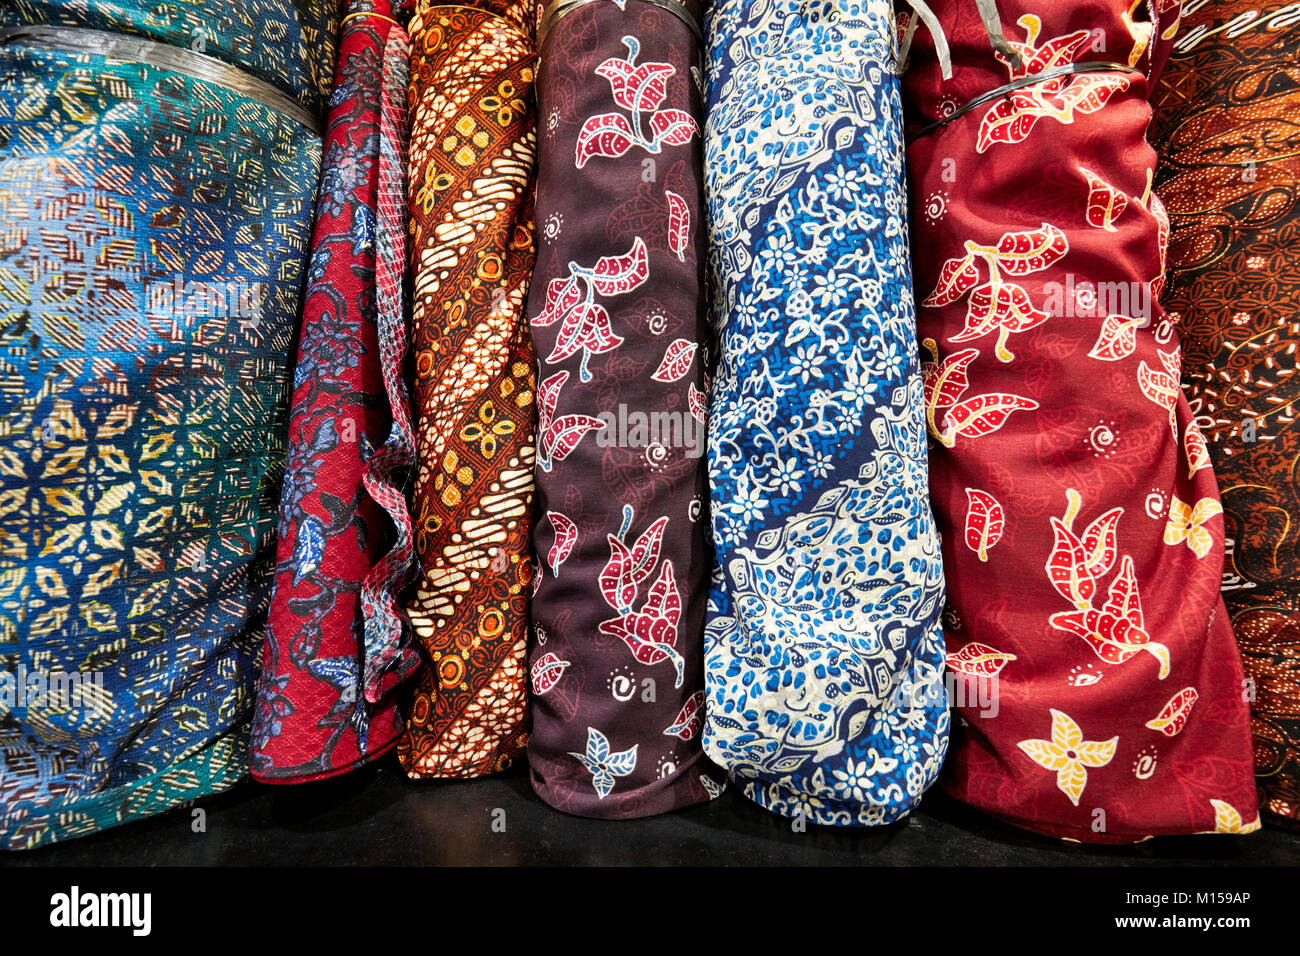 Auswahl der Javanese batik Stoffe für Verkauf in Hamzah Batik Shop.  Yogyakarta, Java, Indonesien Stockfotografie - Alamy